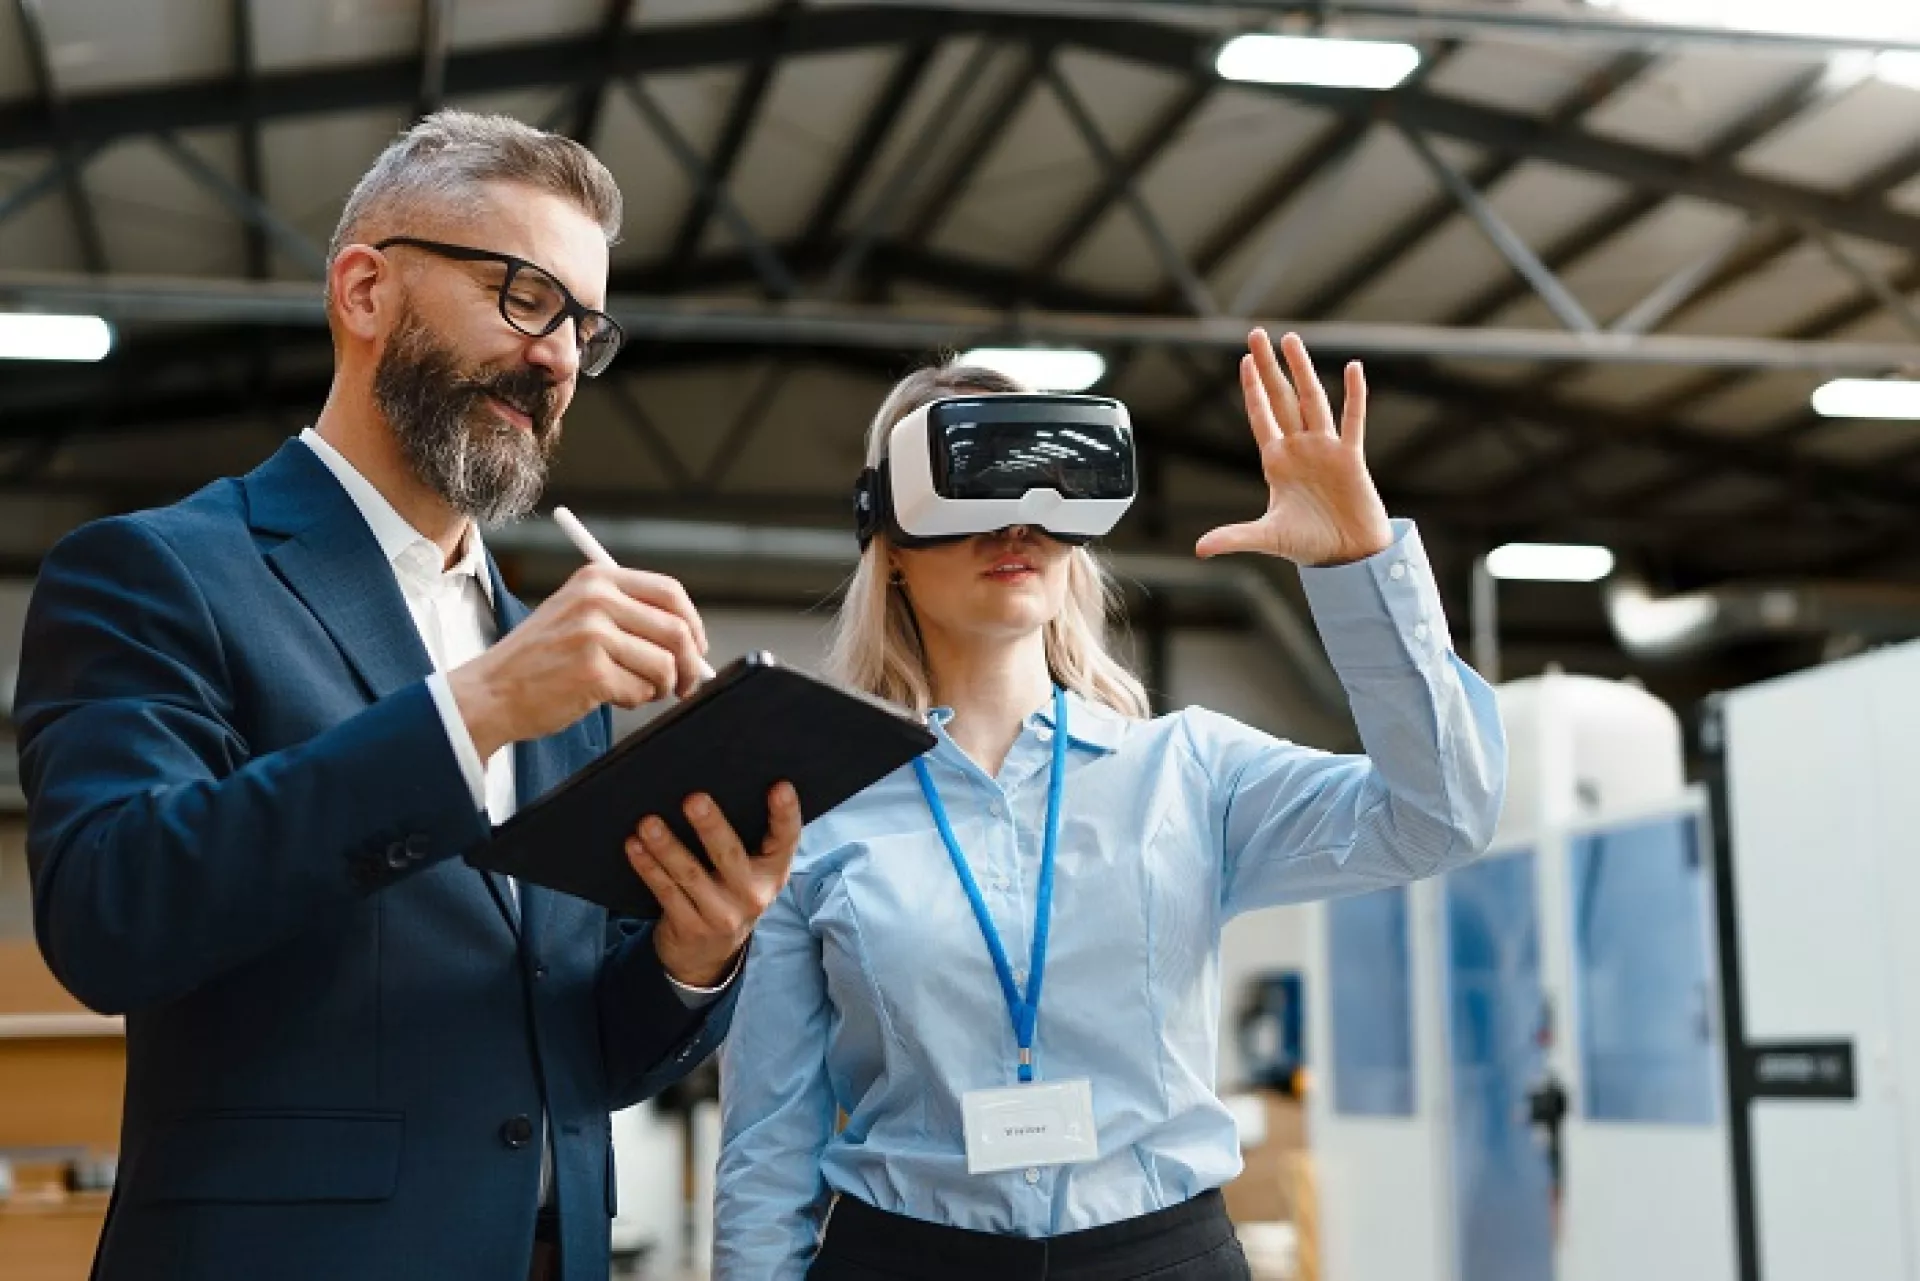 Junge Frau testet eine VR-Brille. Neben ihr steht ein Mann mit Tablet in der Hand.